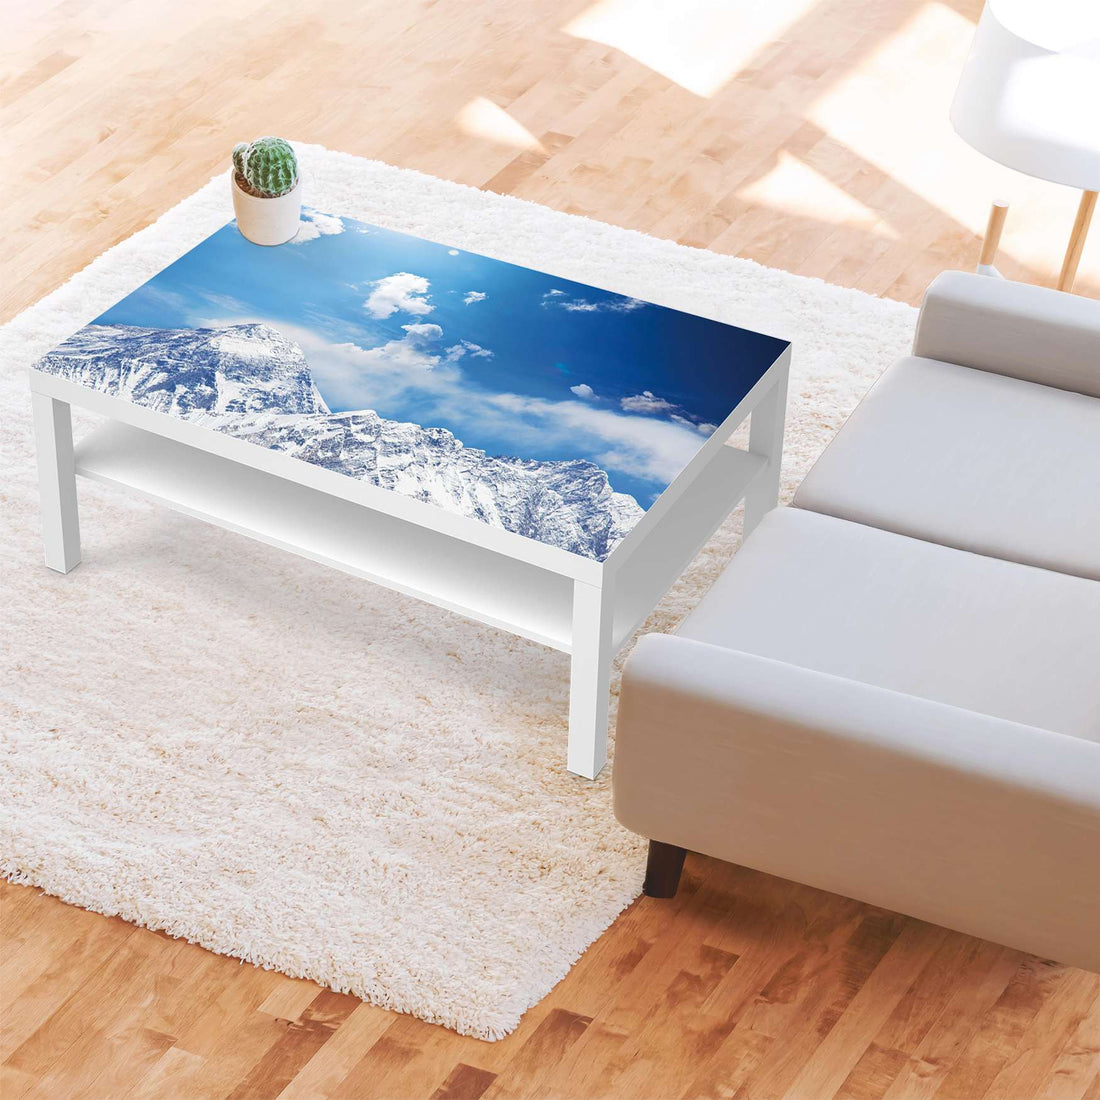 Klebefolie Everest - IKEA Lack Tisch 118x78 cm - Wohnzimmer